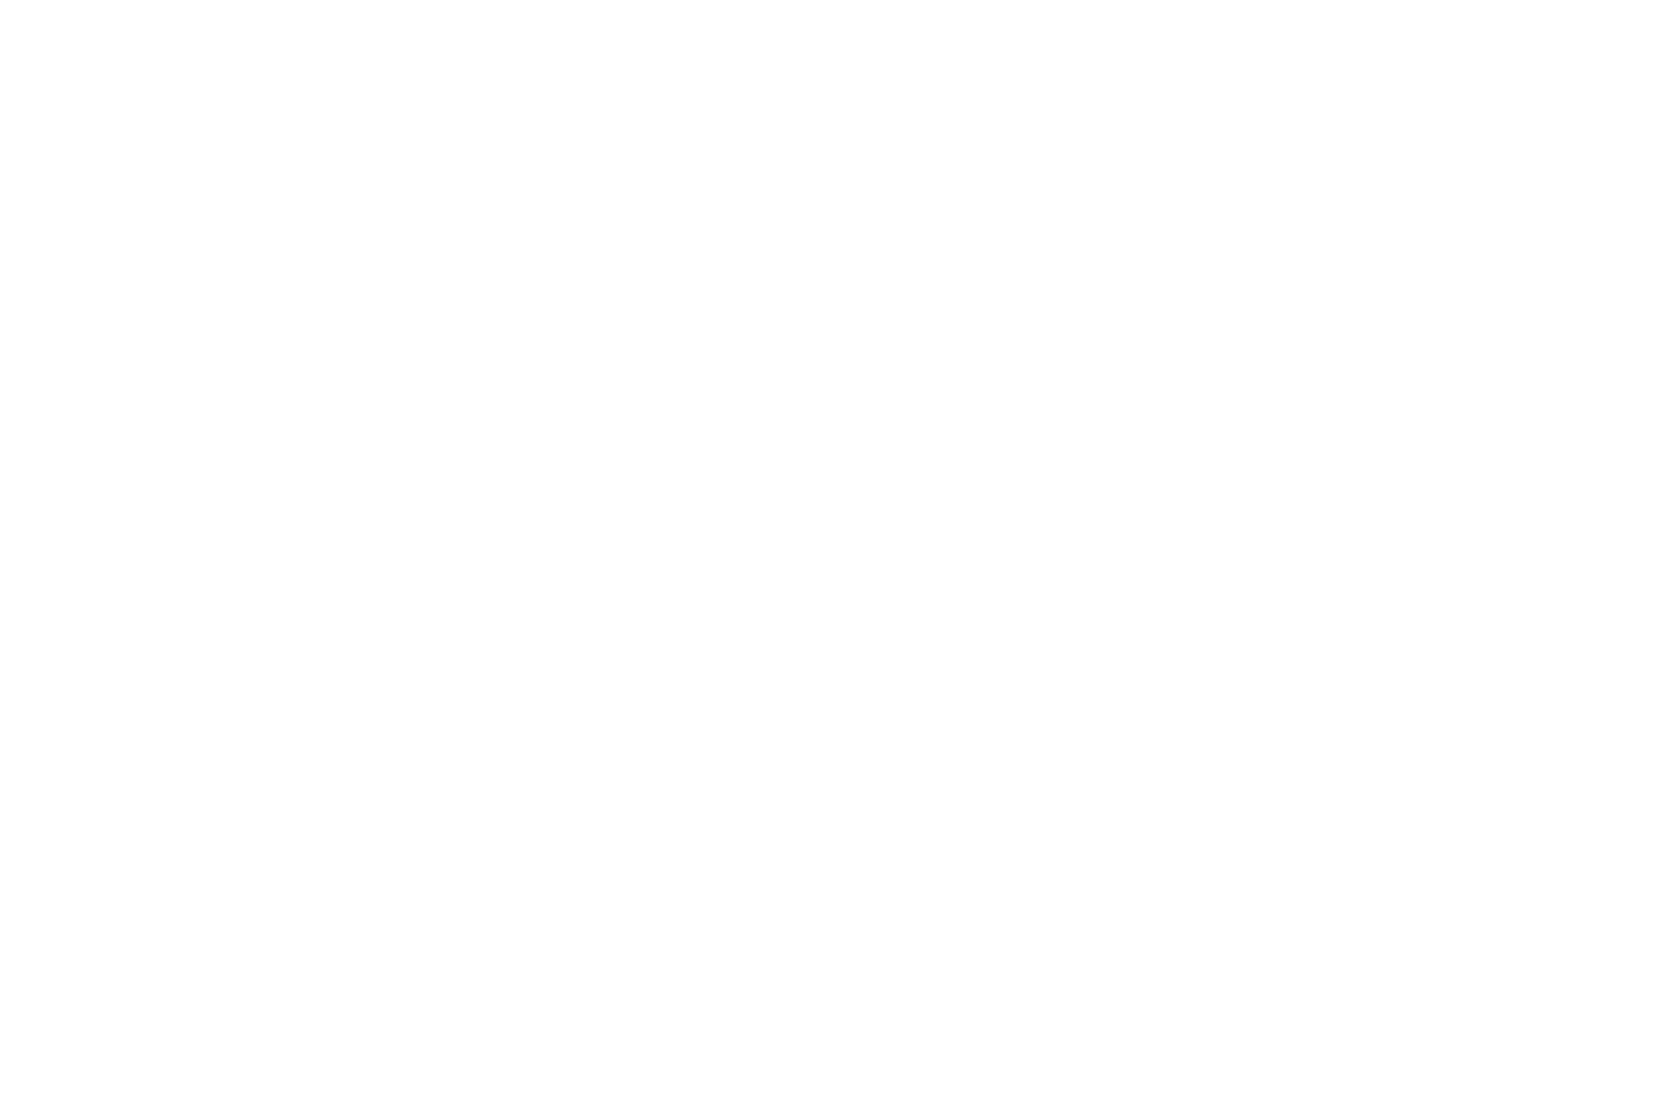 осенний Чуйский тракт в долине реки Катунь у боома Кур кечу в субъекте Российской Федерации Республики Алтай